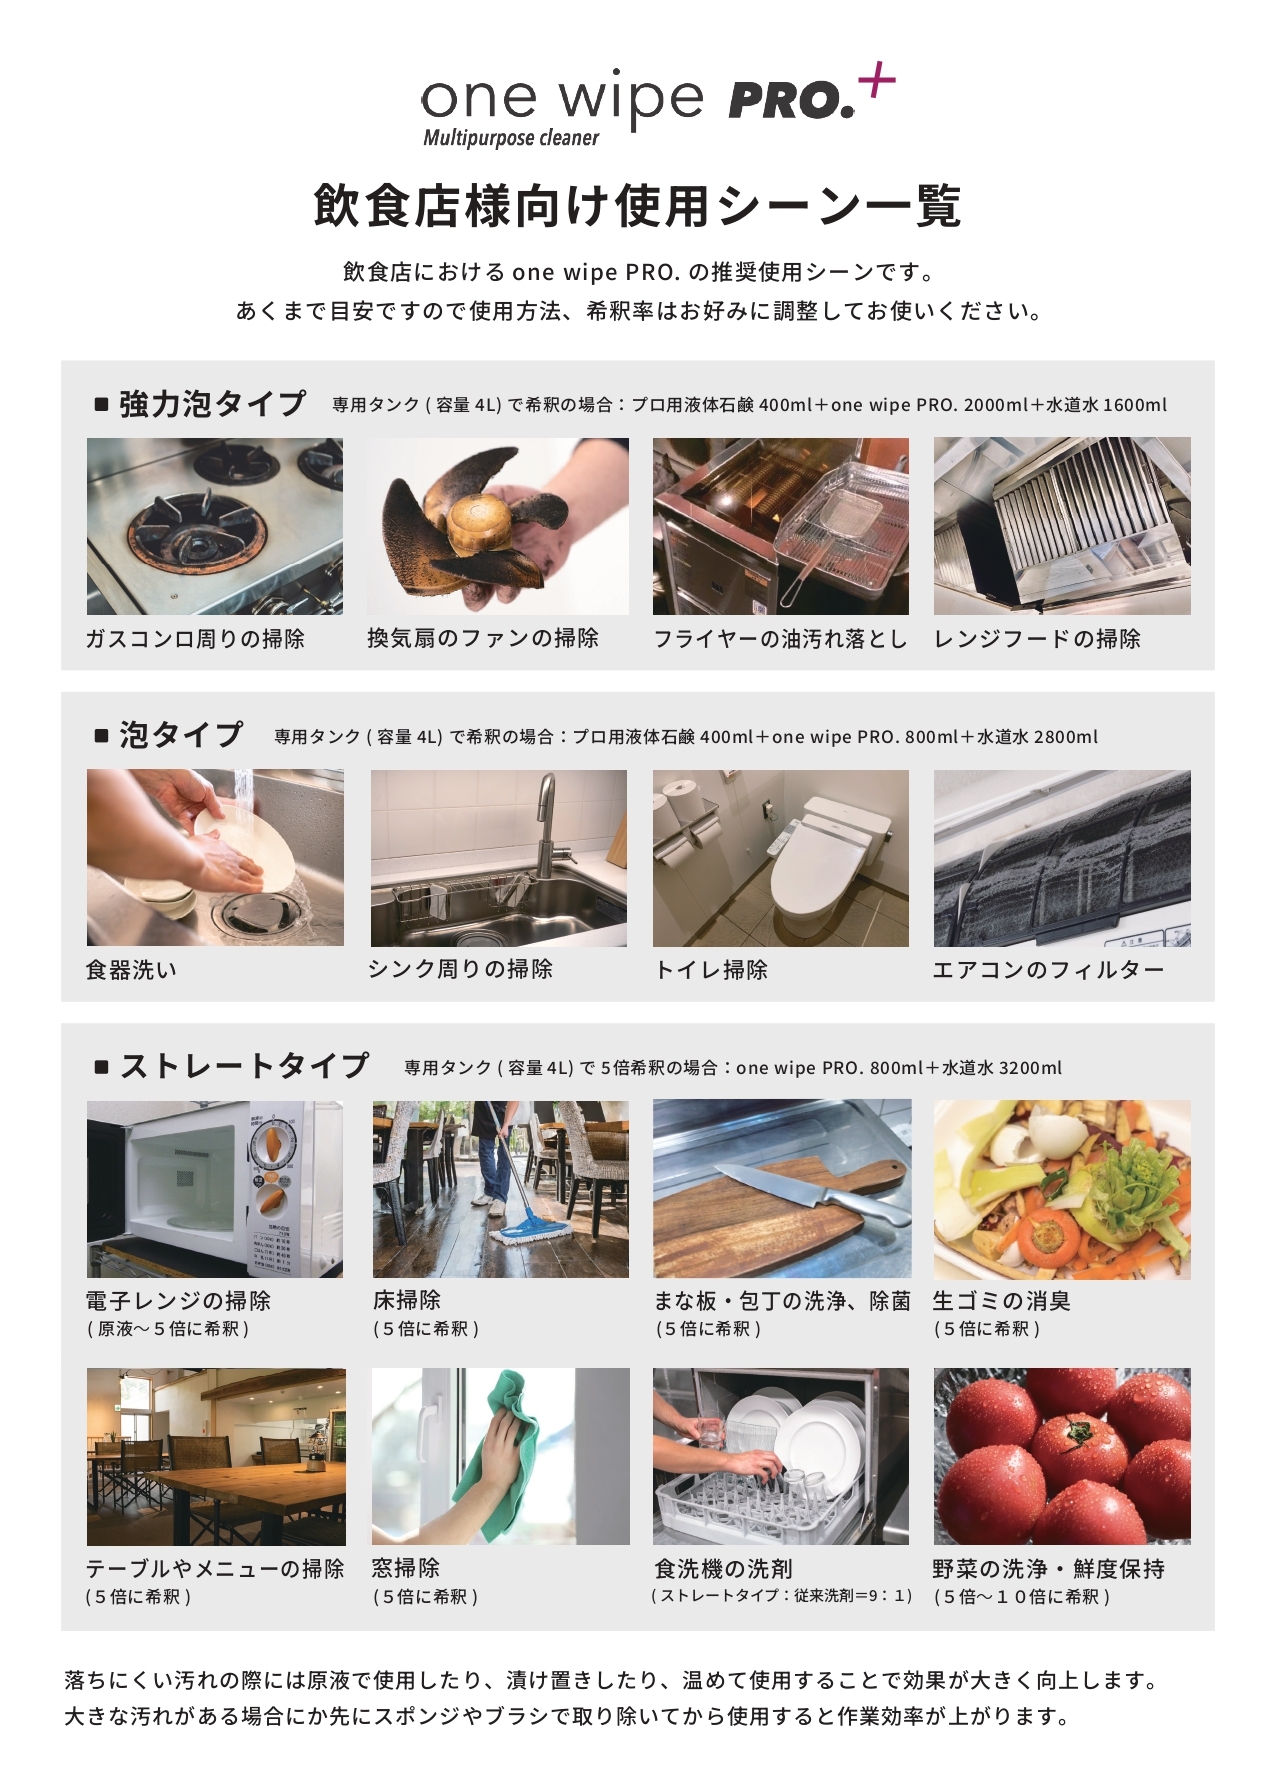 【新】one wipe PRO.飲食店様向け使用シーン_240312_page-0001